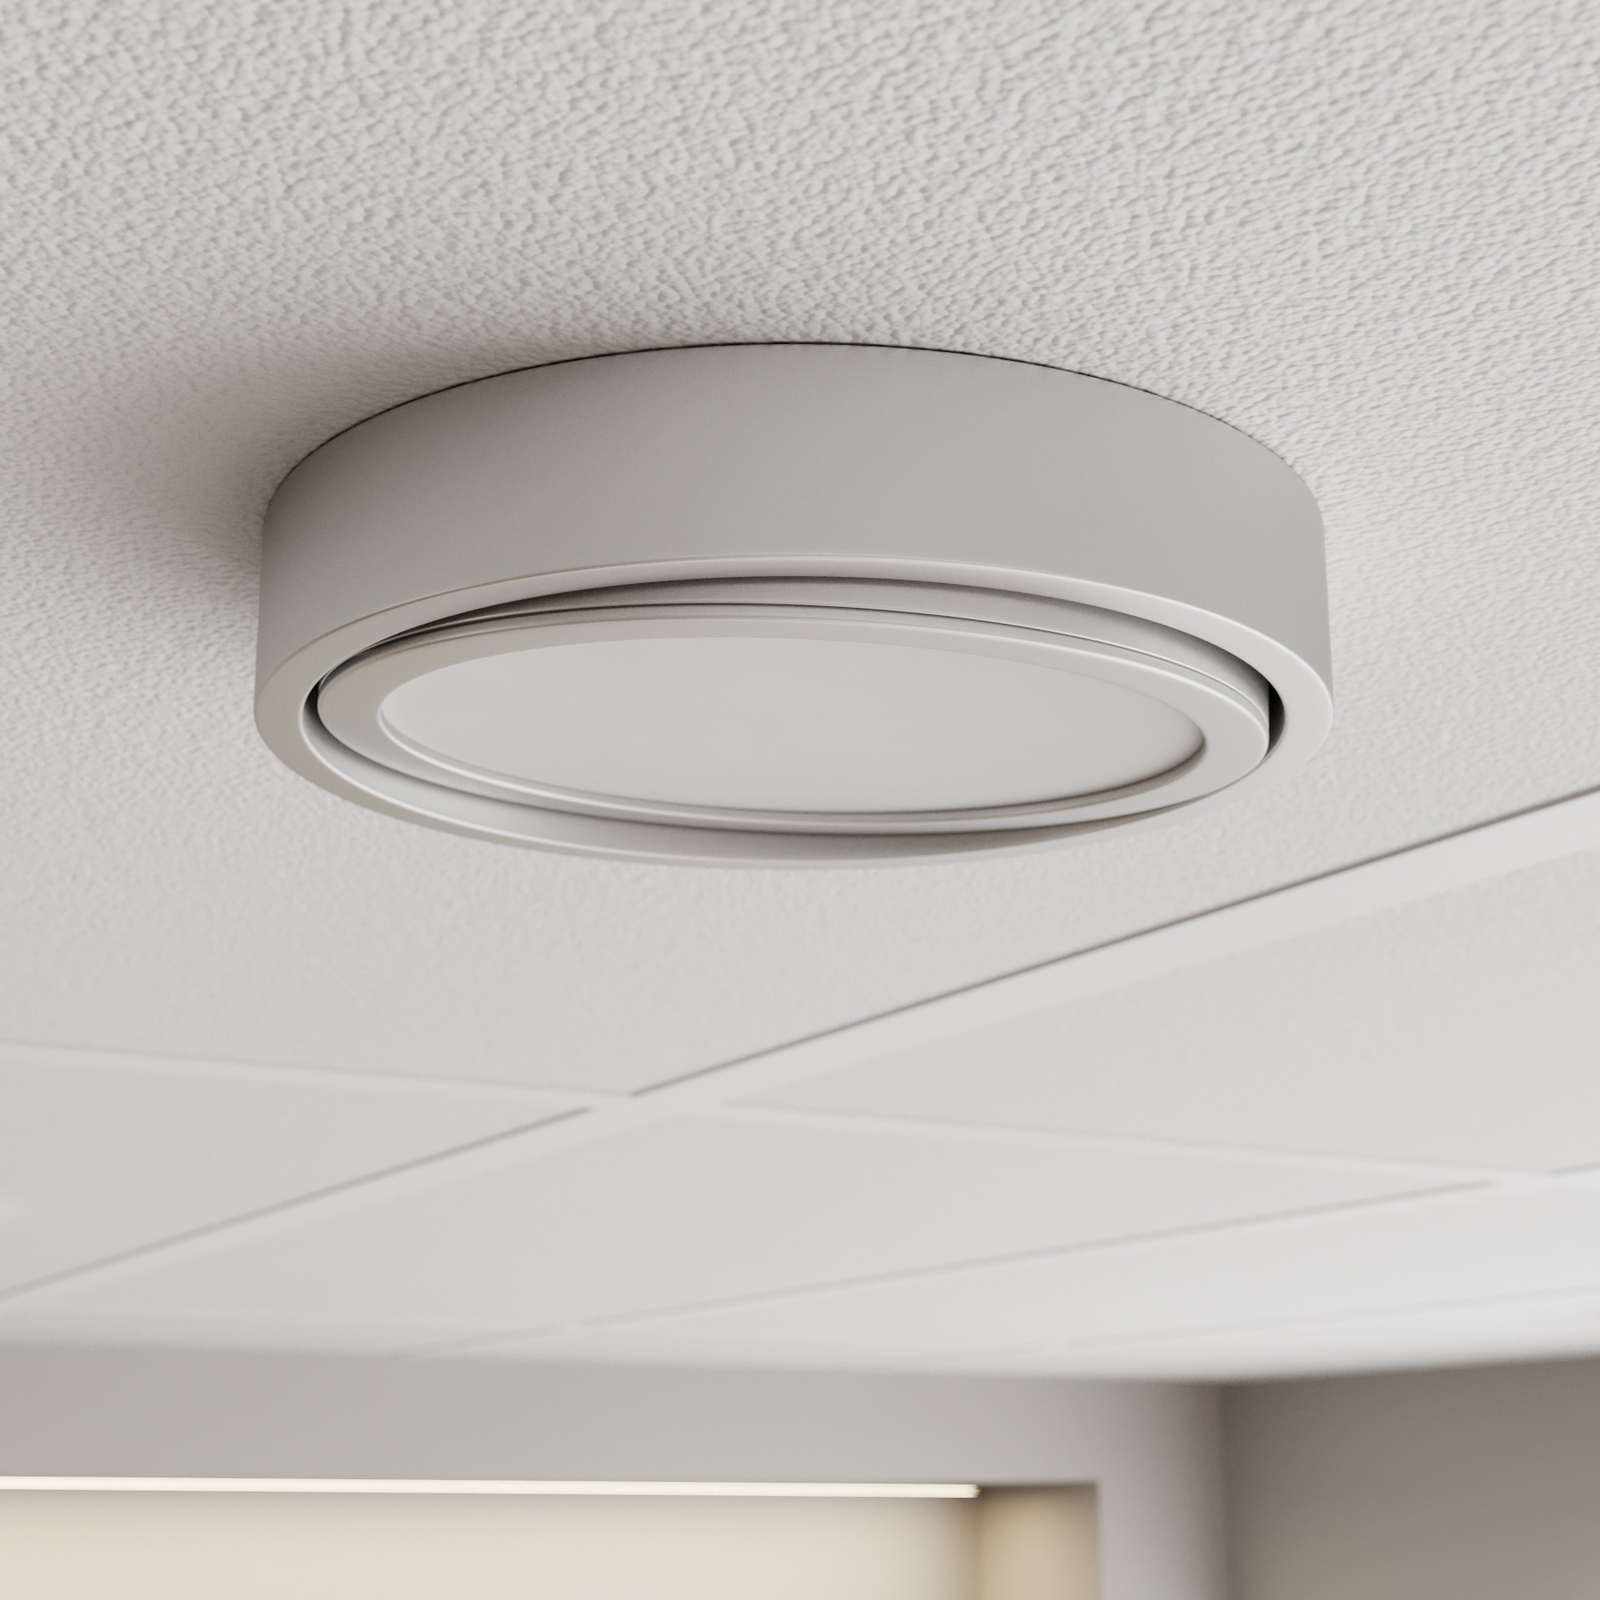 Prios Uvan LED plafondlamp draaibaar, rond, chroom